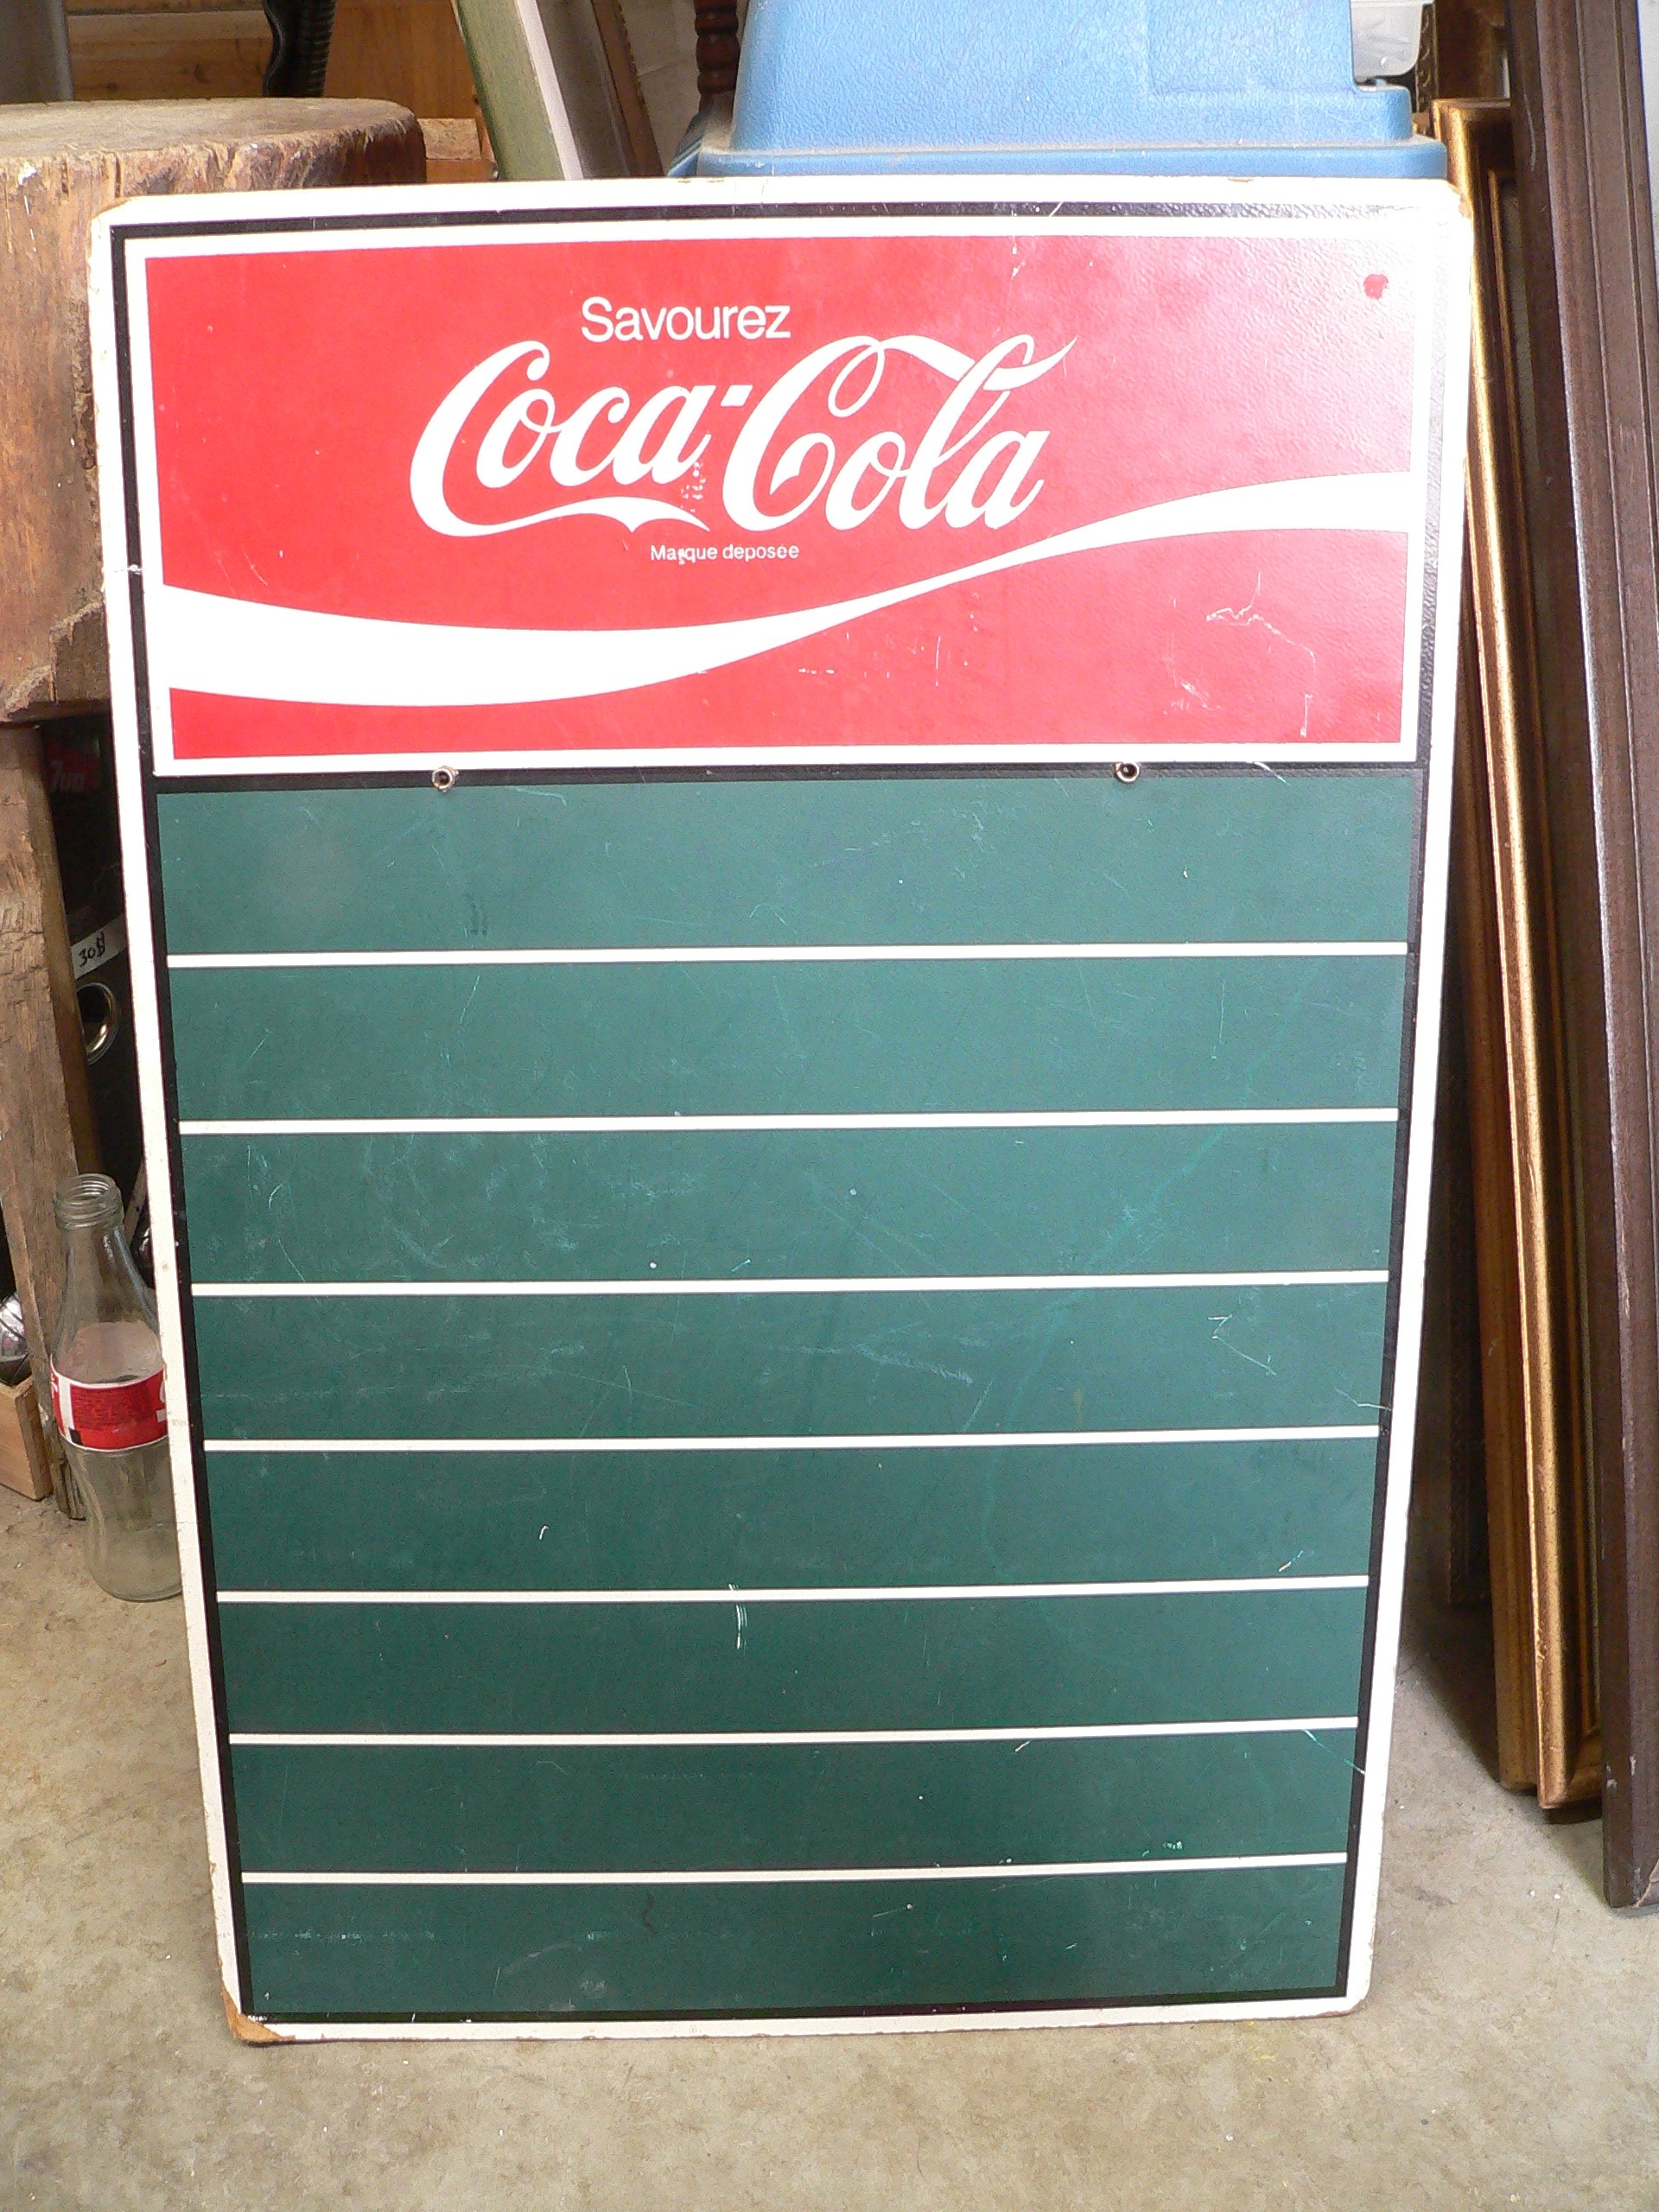 Tableau coca cola # 10925.14 